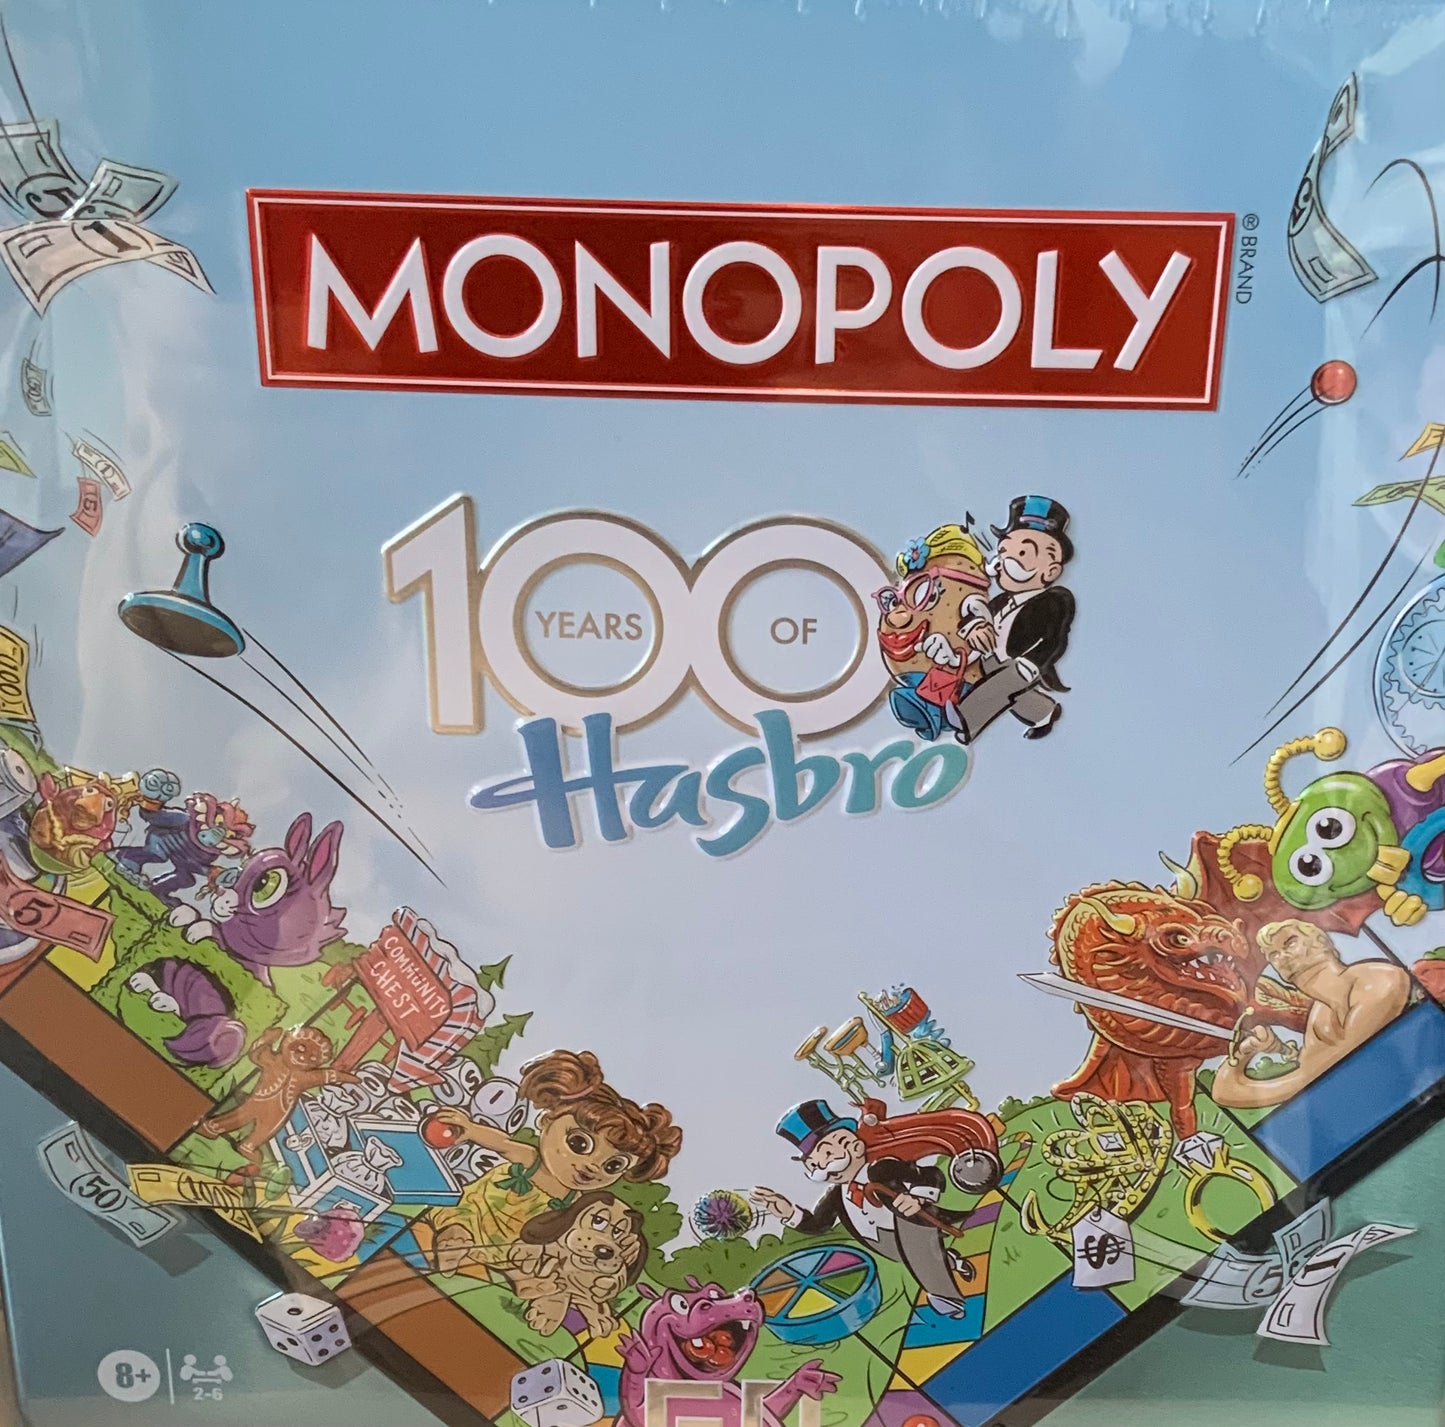 Monopoly 100 years of hasbro